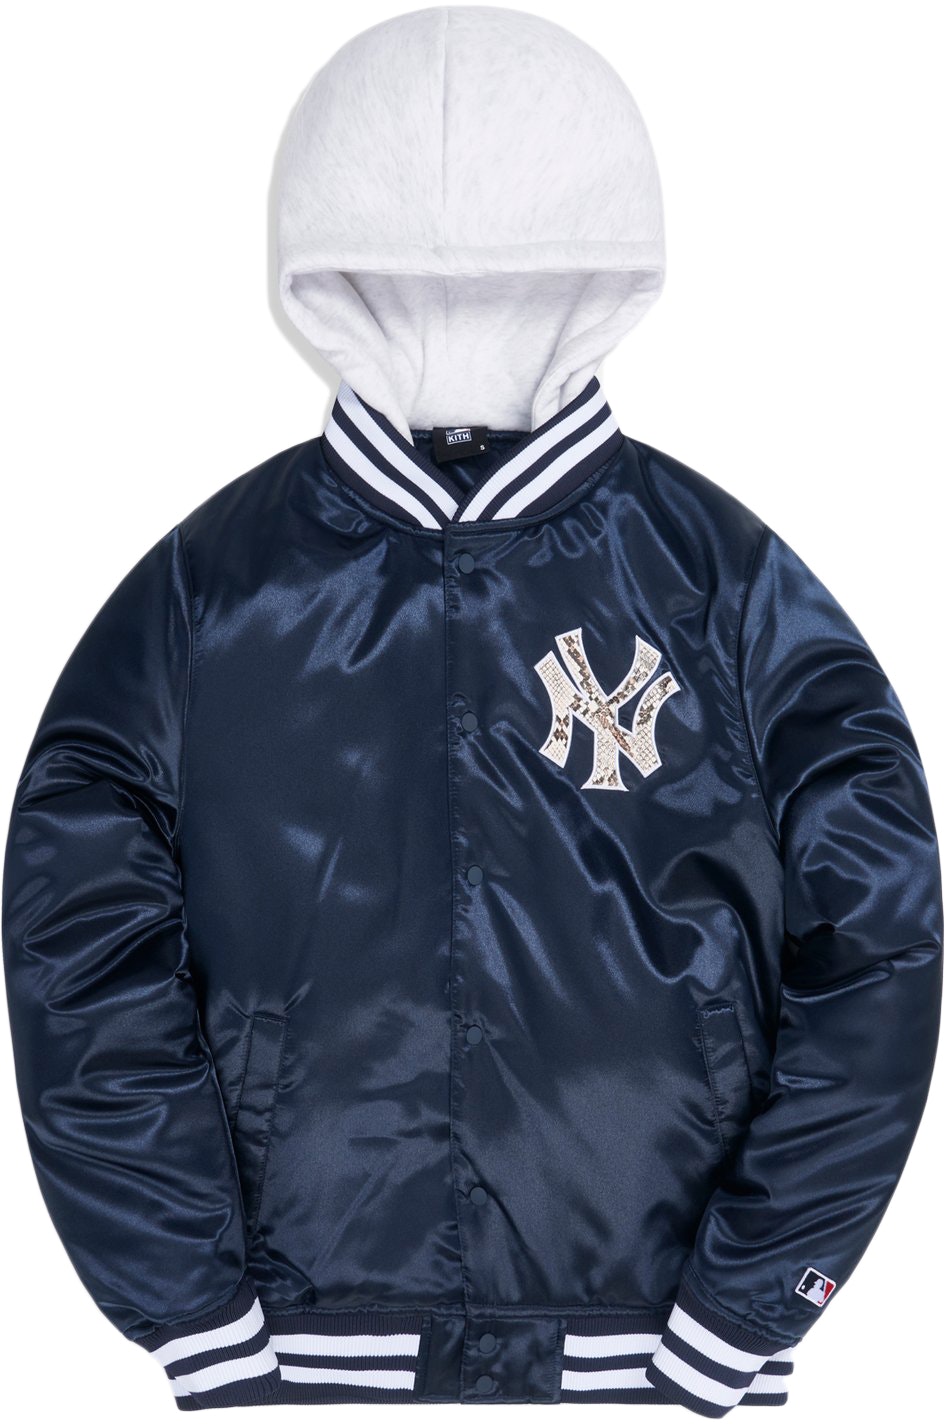 supremeS KITH MLB Yankees Gorman Jacket Navy - ジャケット・アウター